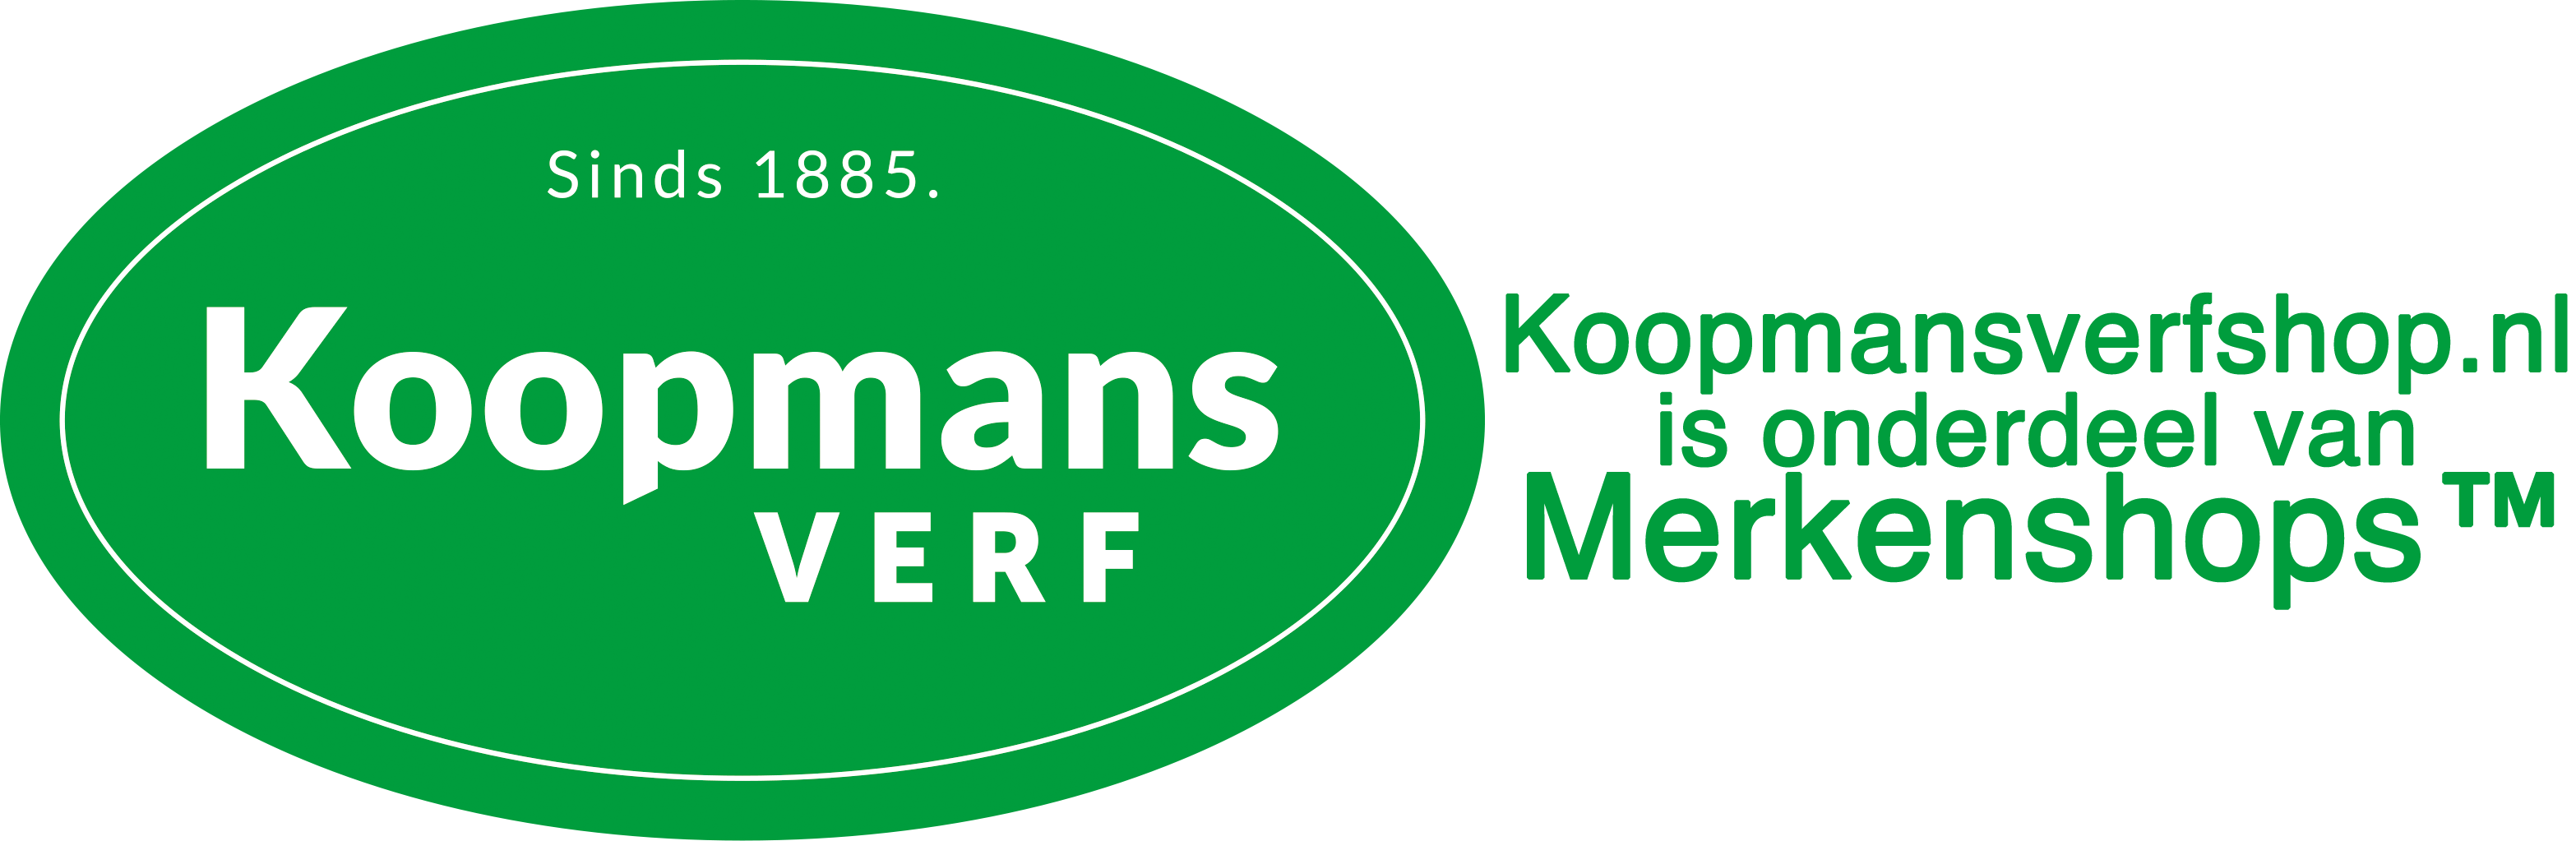 alleen Zuidelijk Oorlogsschip Koopmansverfshop.nl - Officiële online Koopmans Verfwinkel. Vertrouwd